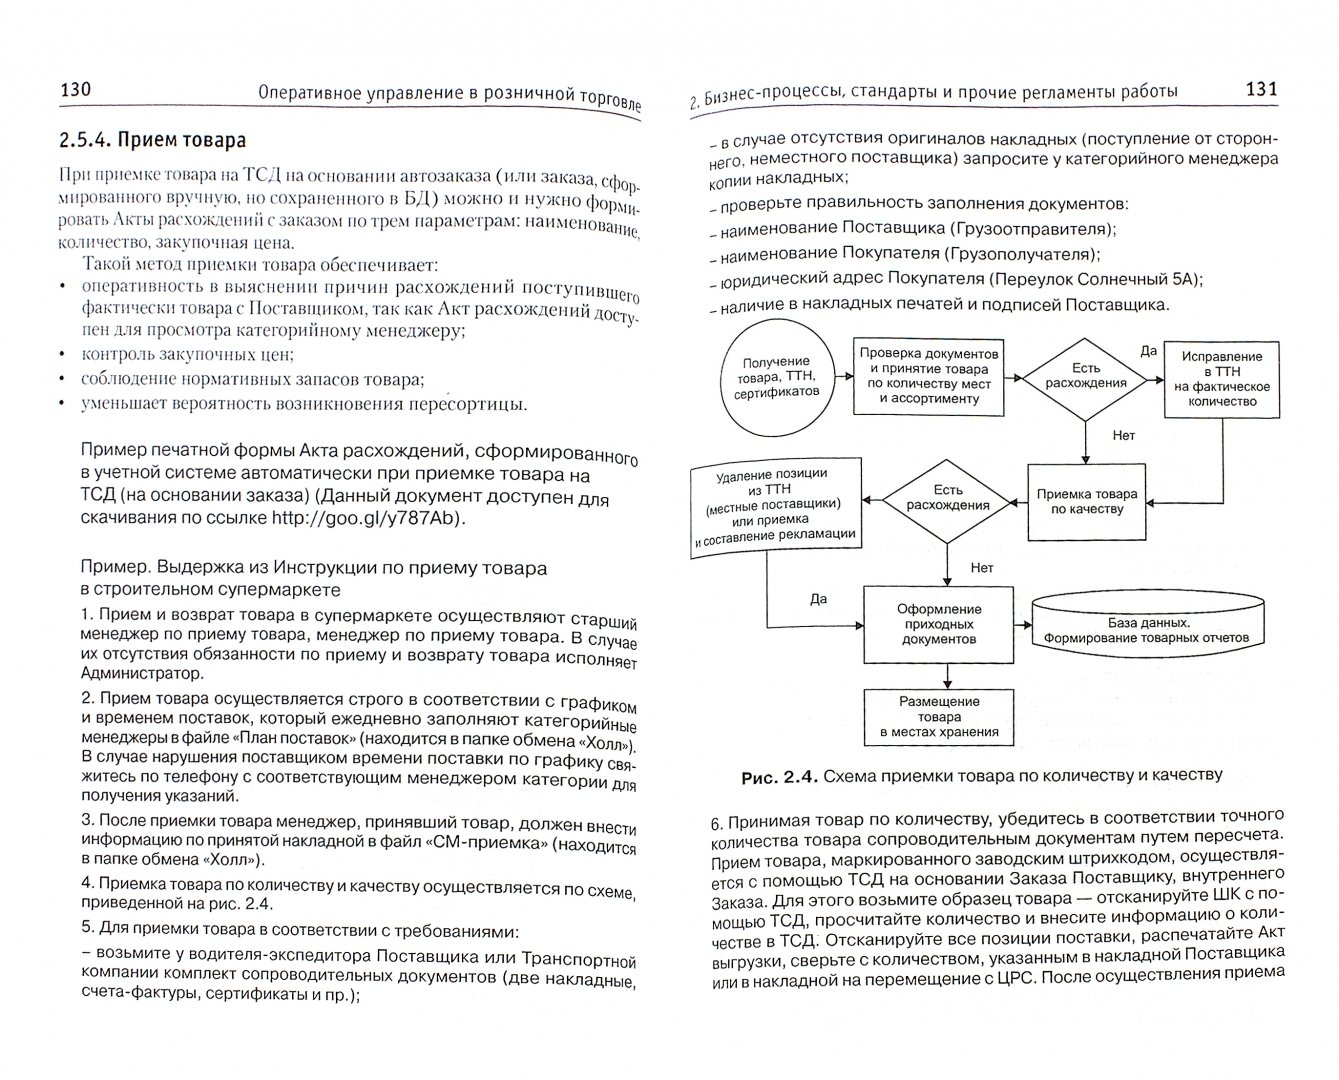 Иллюстрация 1 из 8 для Оперативное управление в розничной торговле - Новоселова, Сысоева | Лабиринт - книги. Источник: Лабиринт